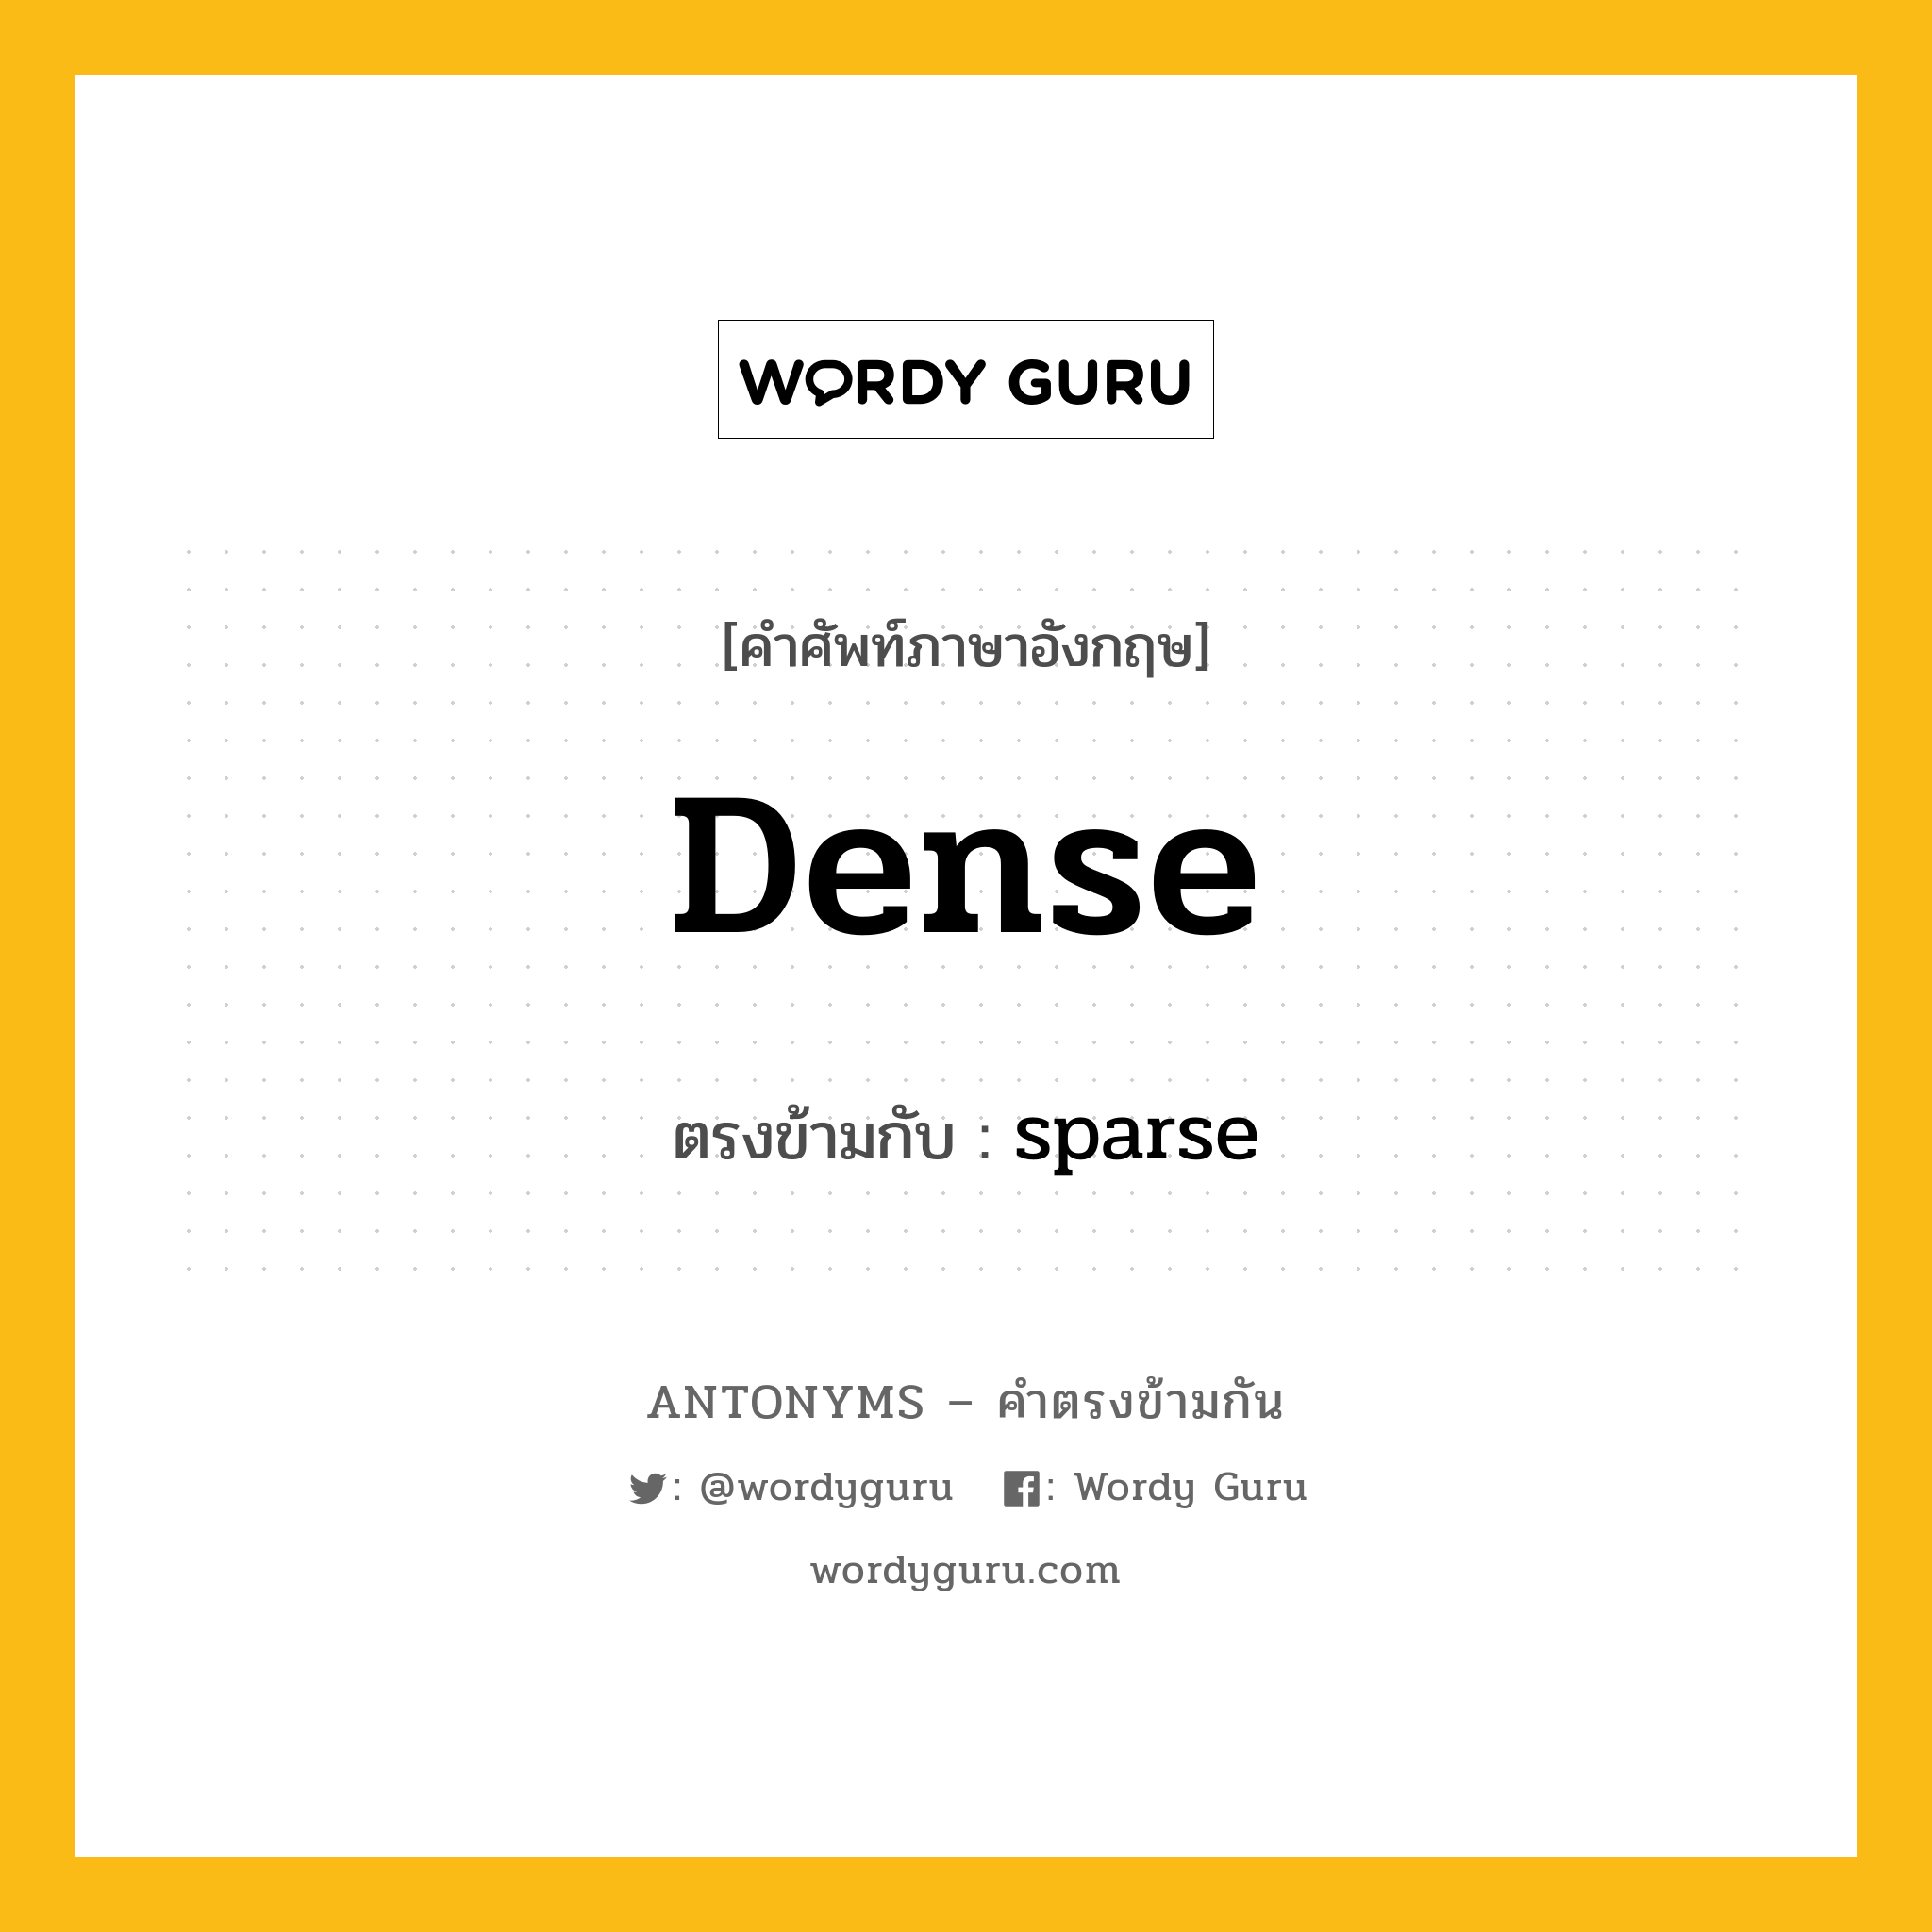 dense เป็นคำตรงข้ามกับคำไหนบ้าง?, คำศัพท์ภาษาอังกฤษ dense ตรงข้ามกับ sparse หมวด sparse